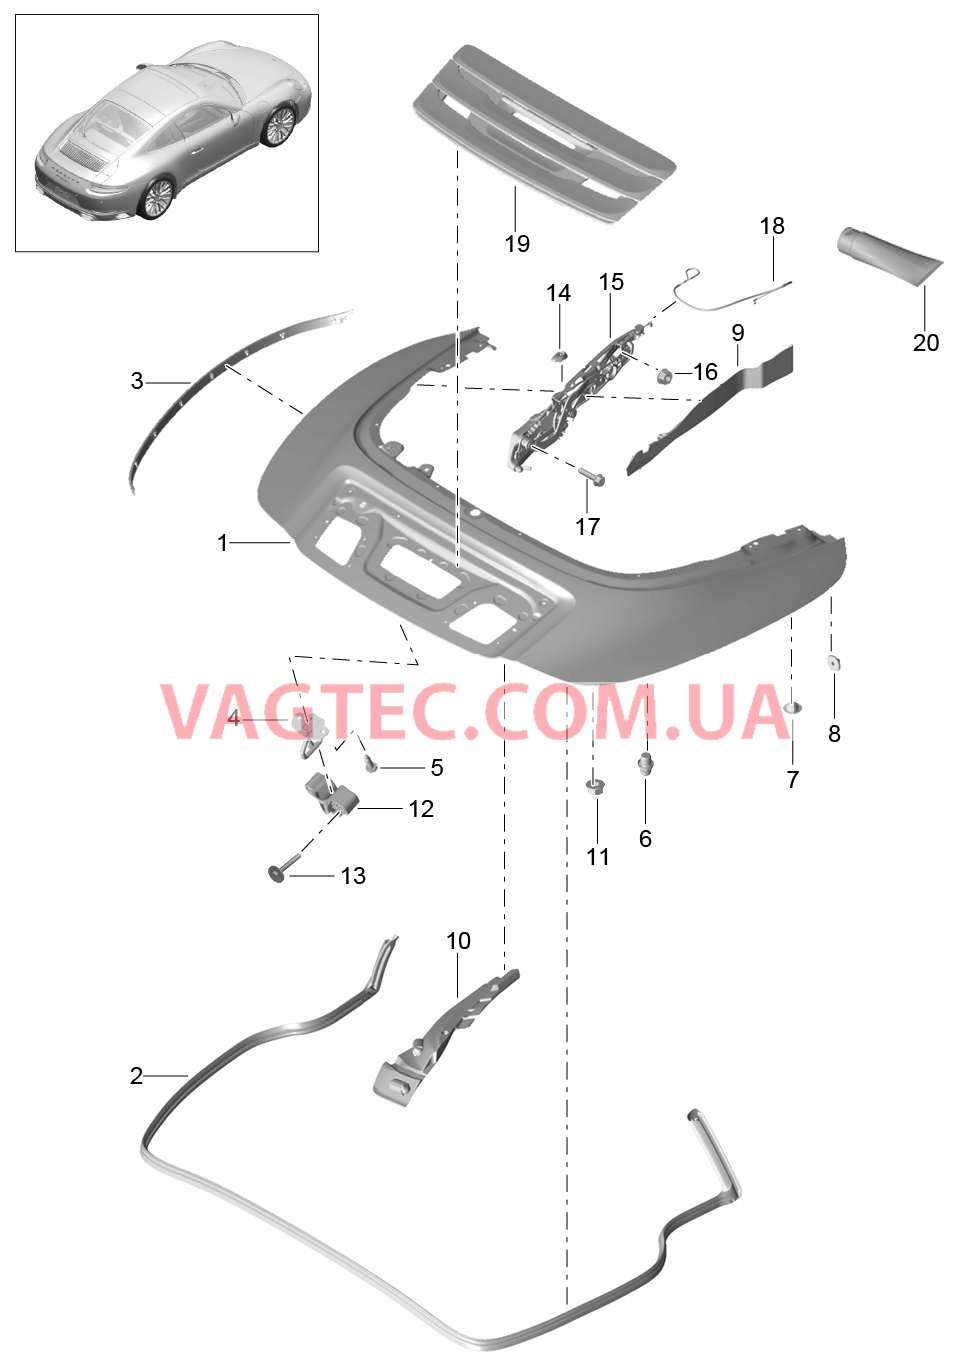 811-062 Отсек складного верха, Крышка
						
						TARGA для PORSCHE 911.Carrera 2017-2018USA